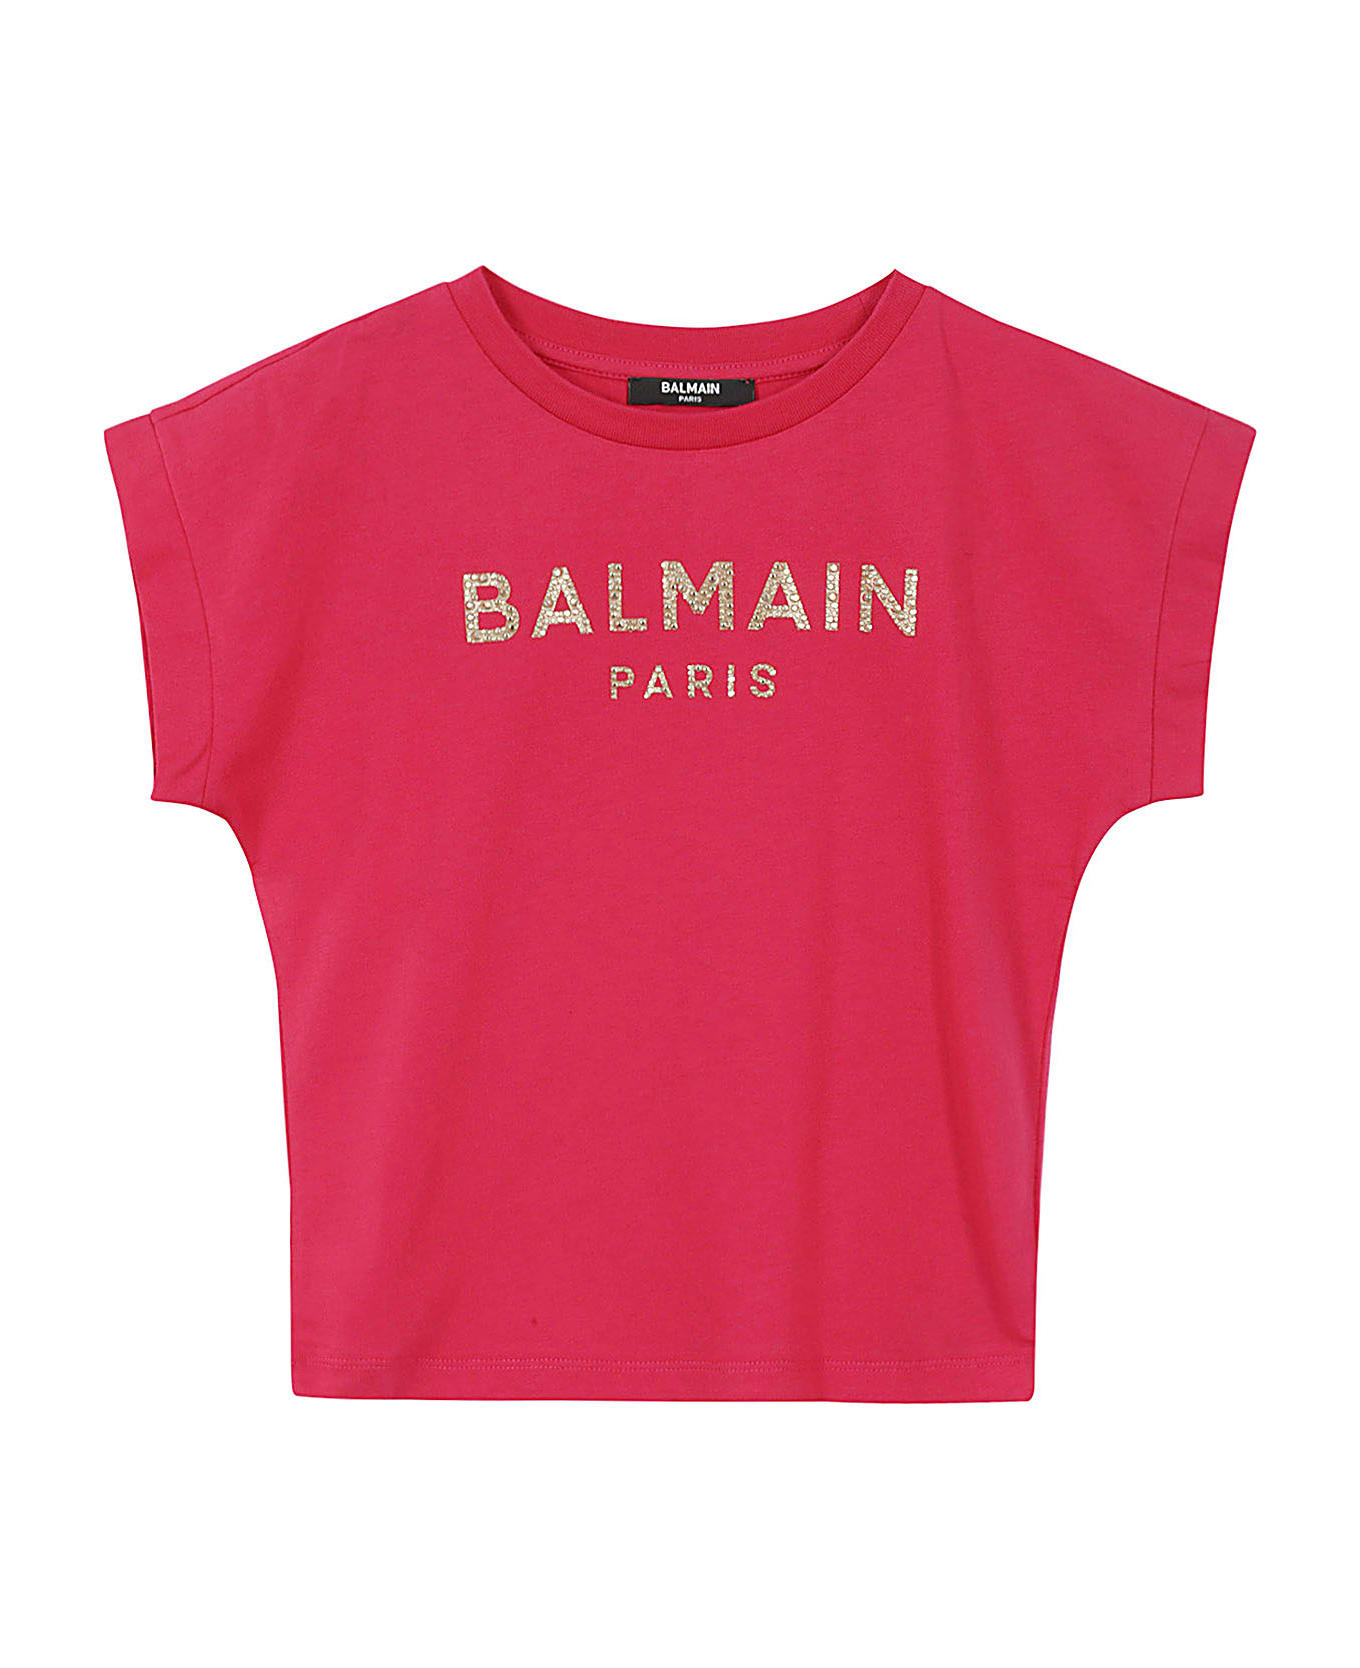 Balmain T Shirt - Nor Rubino Oro